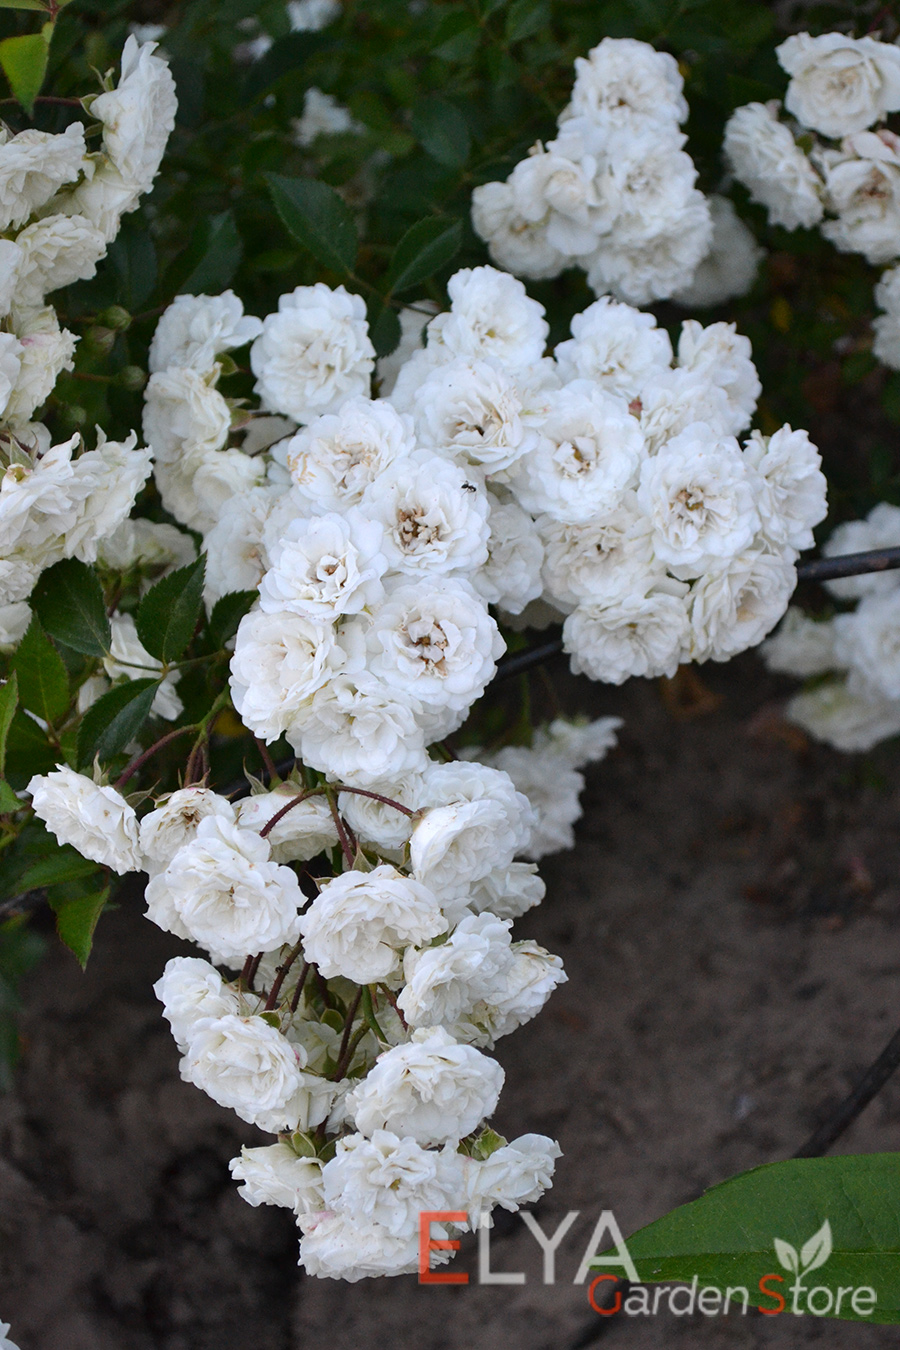 Цветение розы Альба Мейяндекор - это настоящее белое облако из небольших махровых розочек - фото питомника саженцев Elya Garden